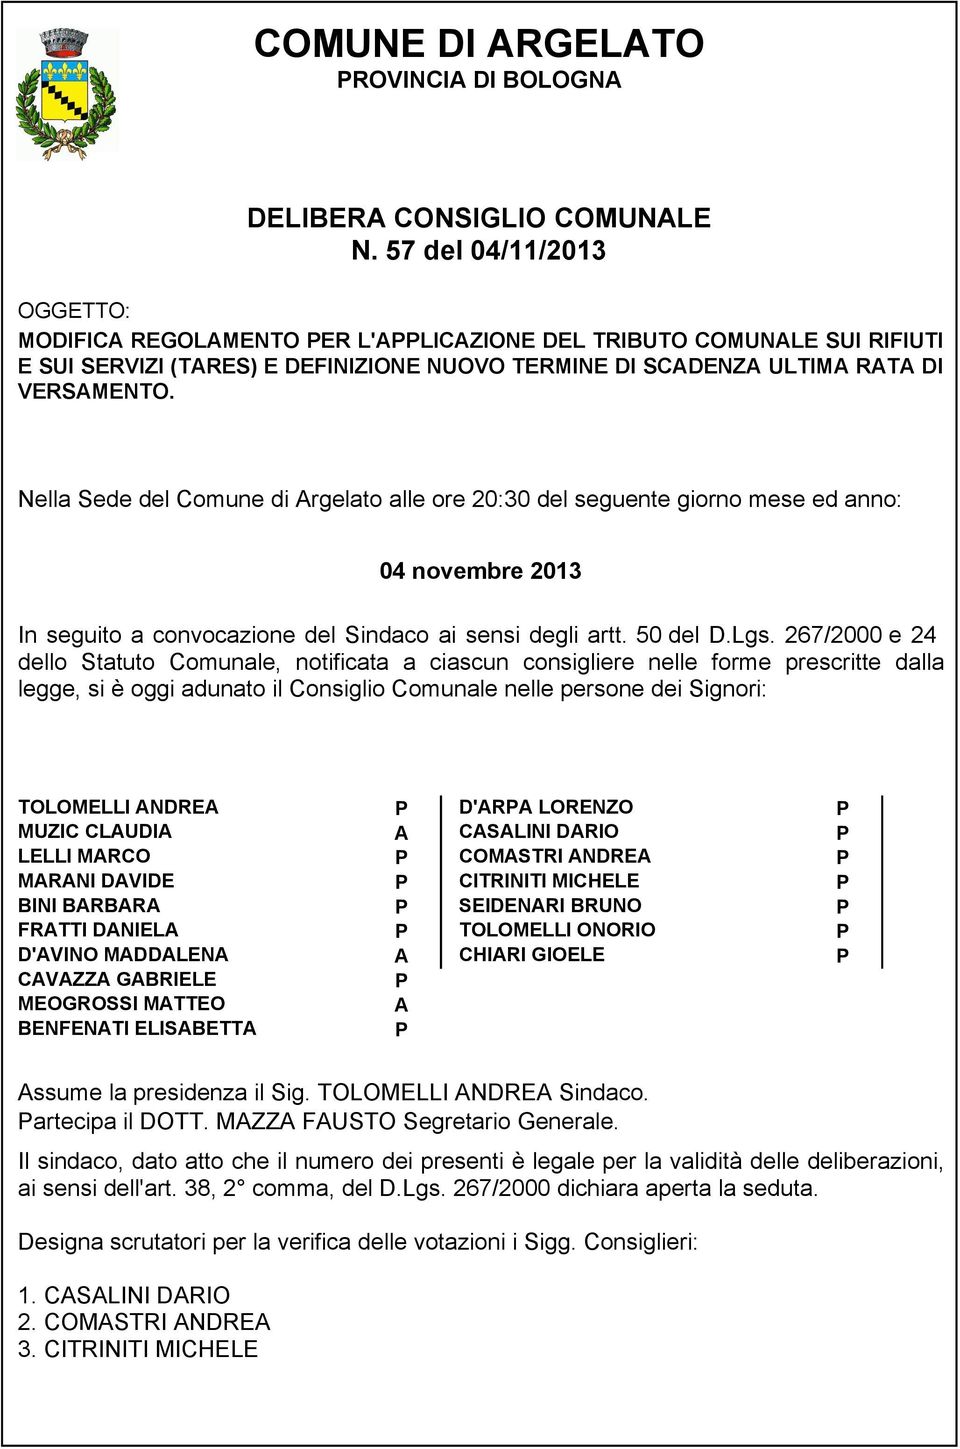 Nella Sede del Comune di Argelato alle ore 20:30 del seguente giorno mese ed anno: 04 novembre 2013 In seguito a convocazione del Sindaco ai sensi degli artt. 50 del D.Lgs.